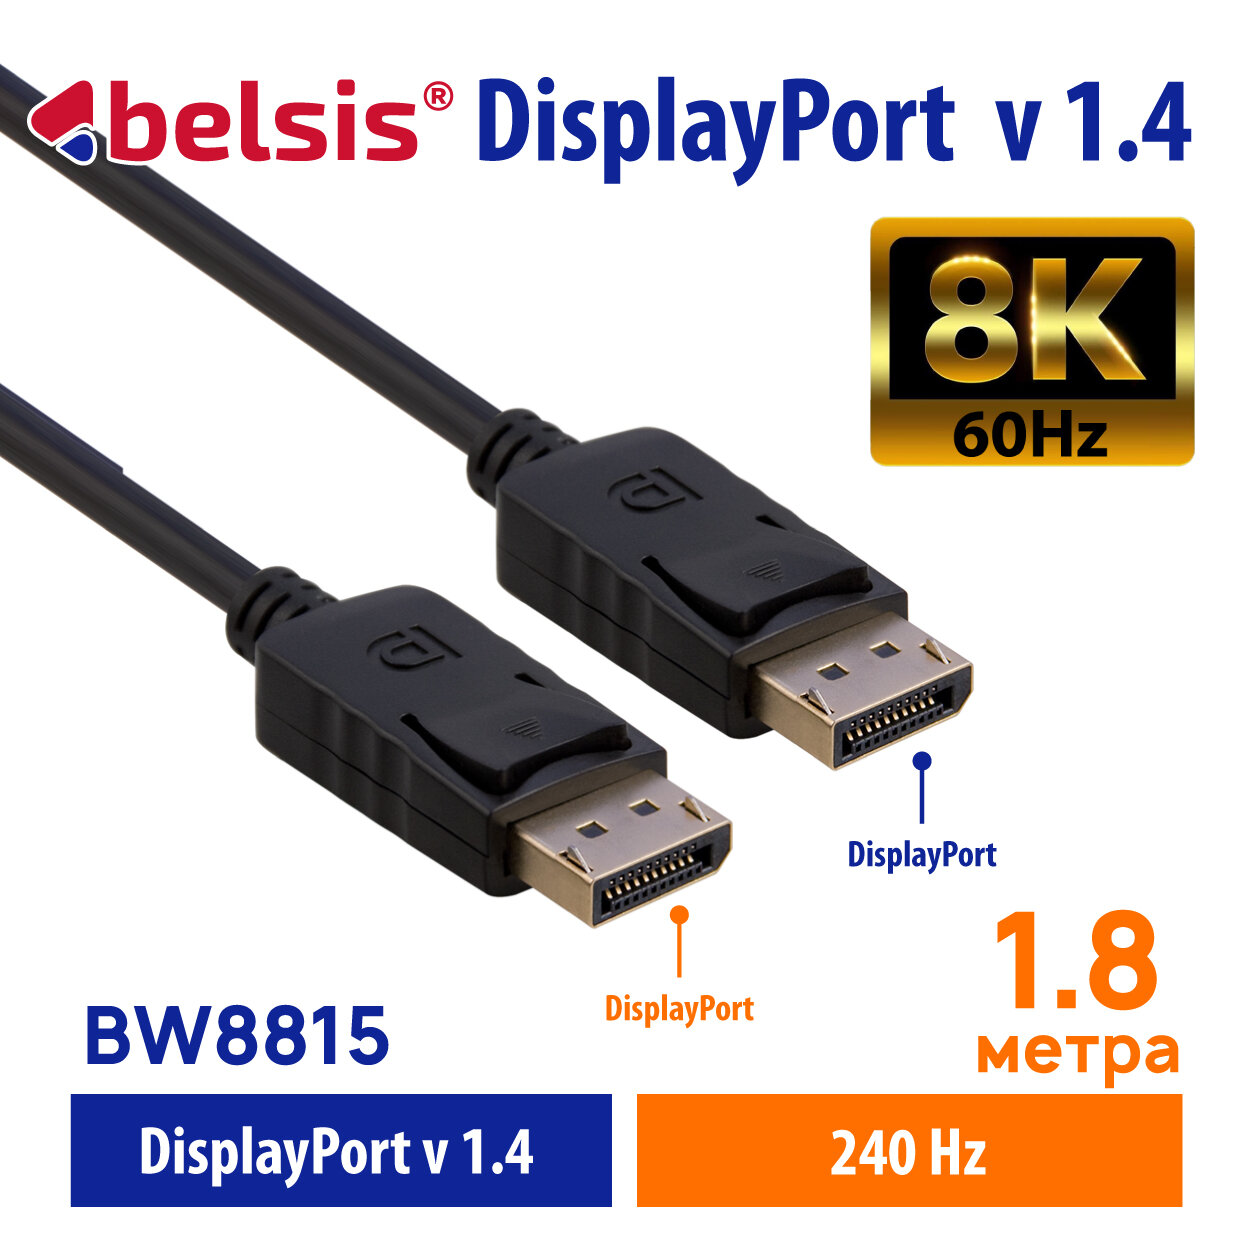 Кабель DisplayPort 1.4 8K 60Hz, 4K 165Hz, Belsis, дисплей порт 1.4, длина 1,8 метра/BW8815